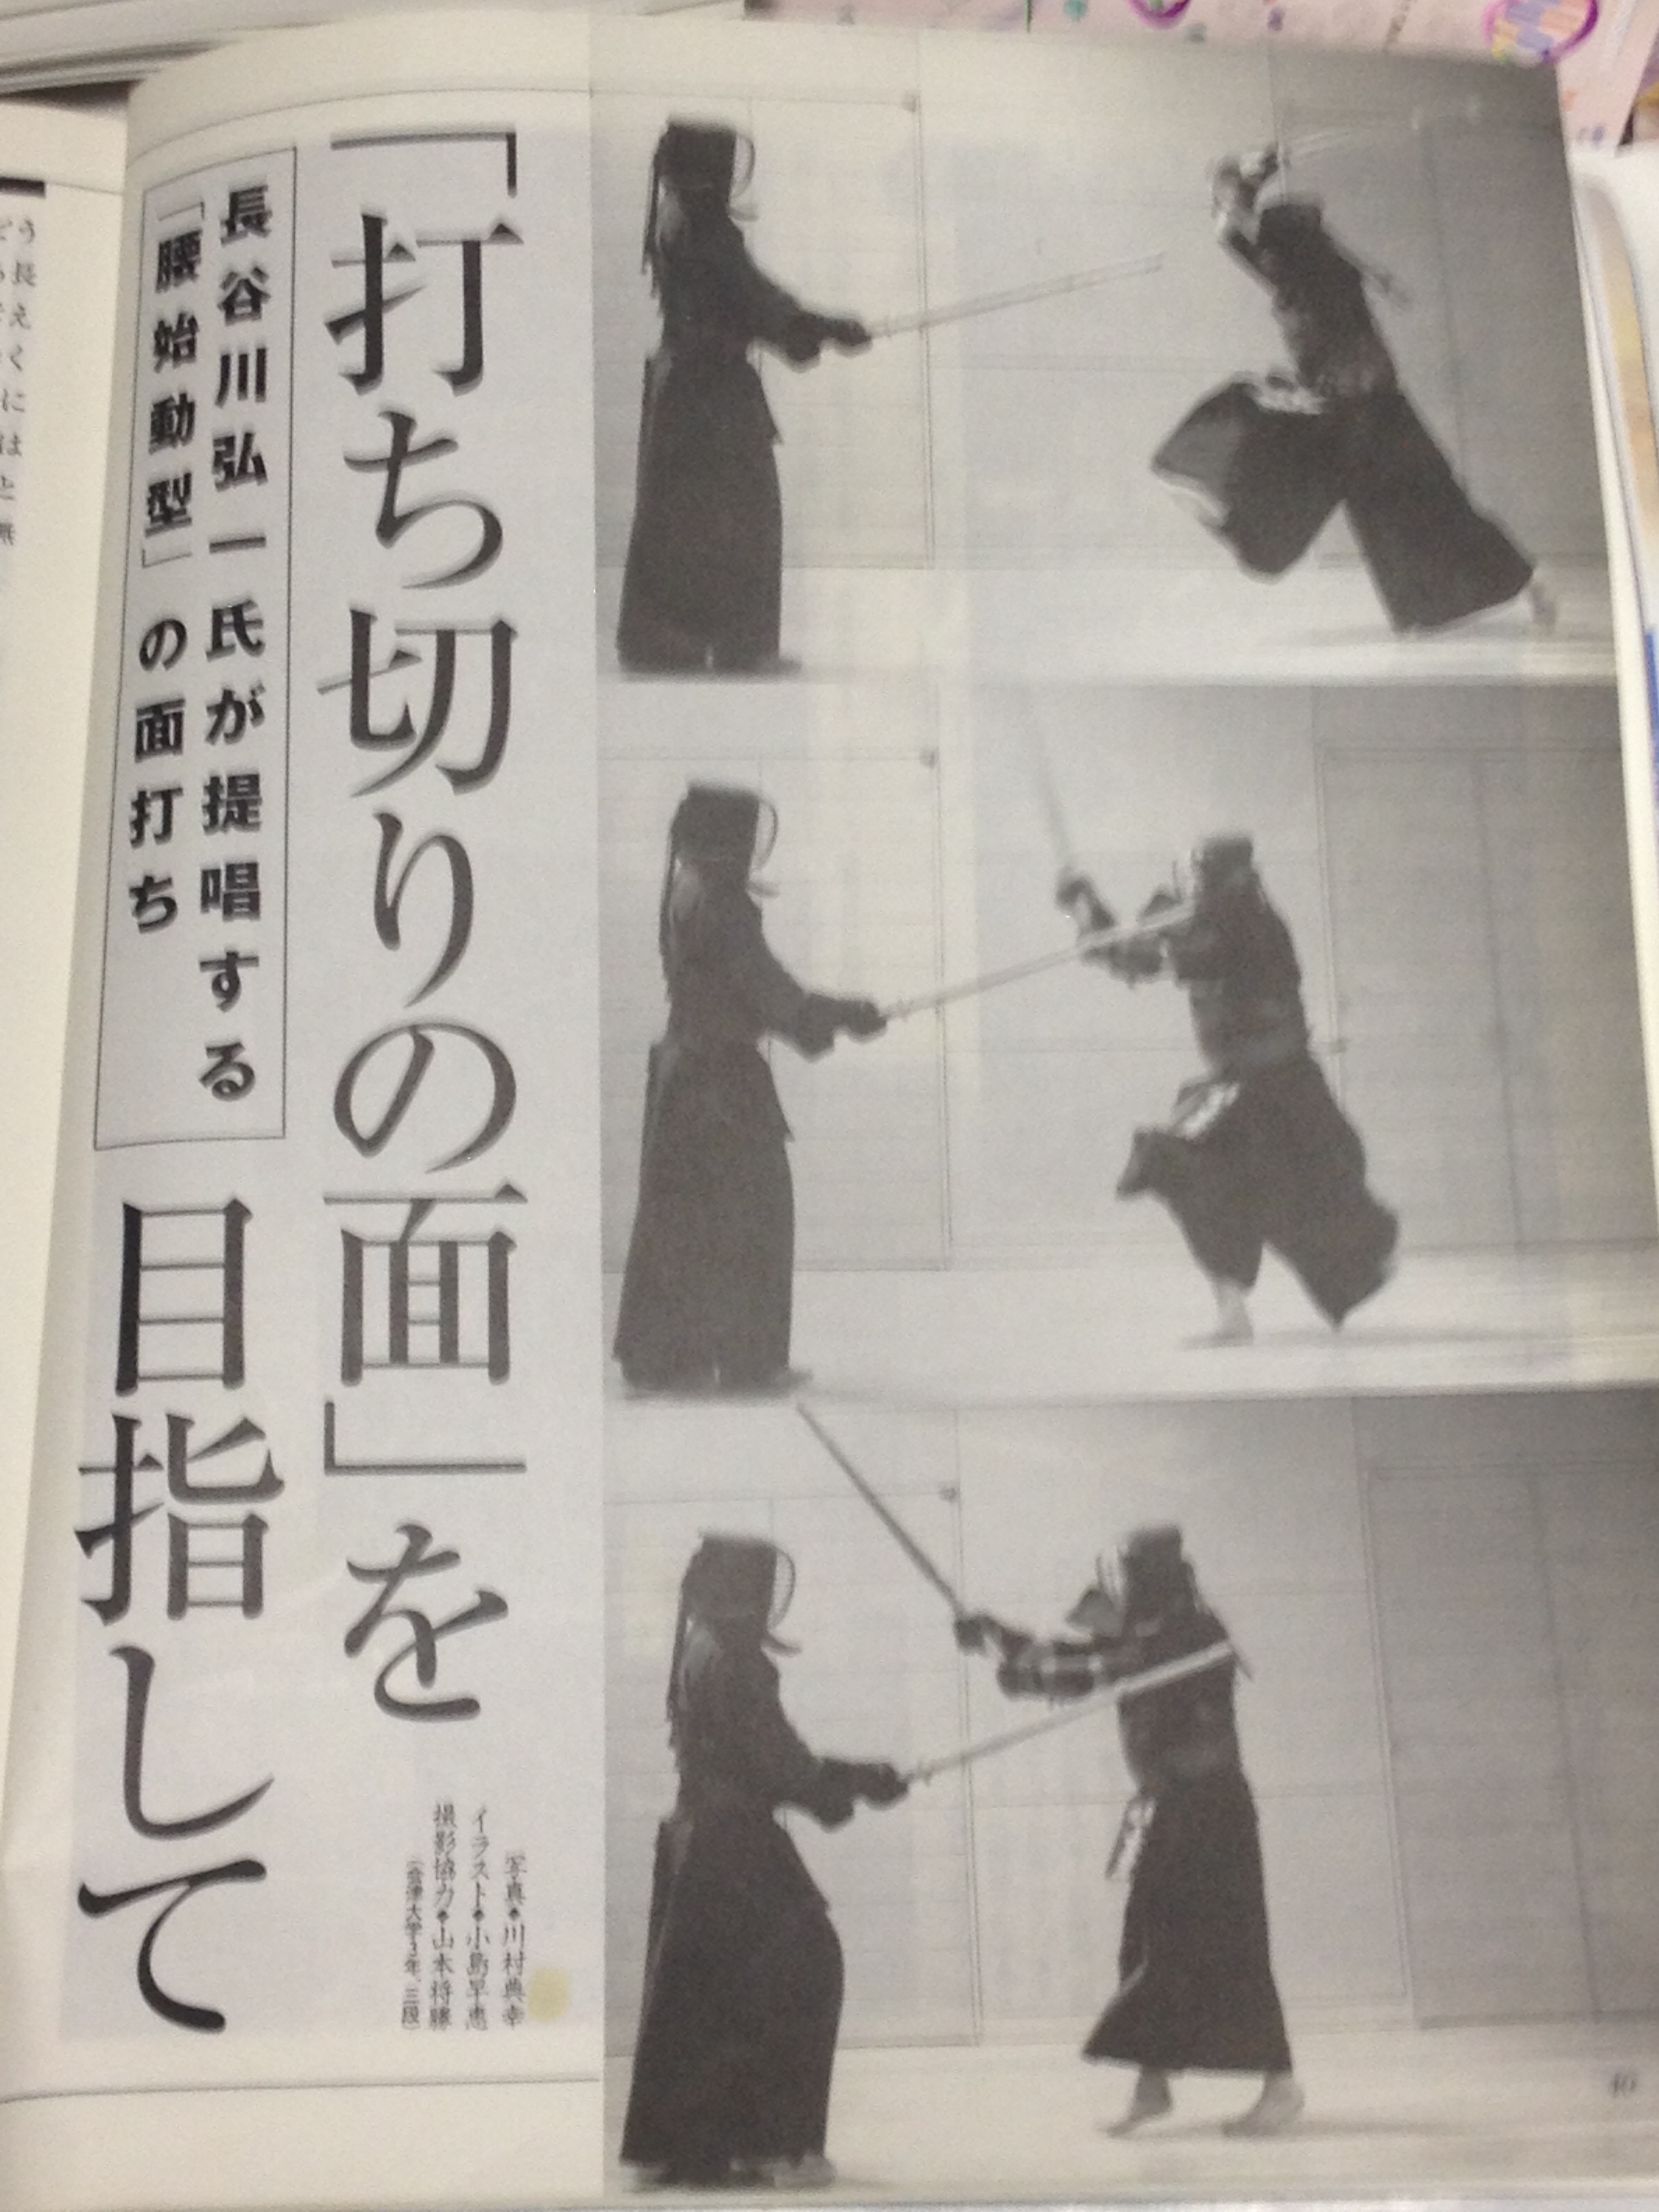 剣道におけるイメージ・呼吸法についての実践的試論